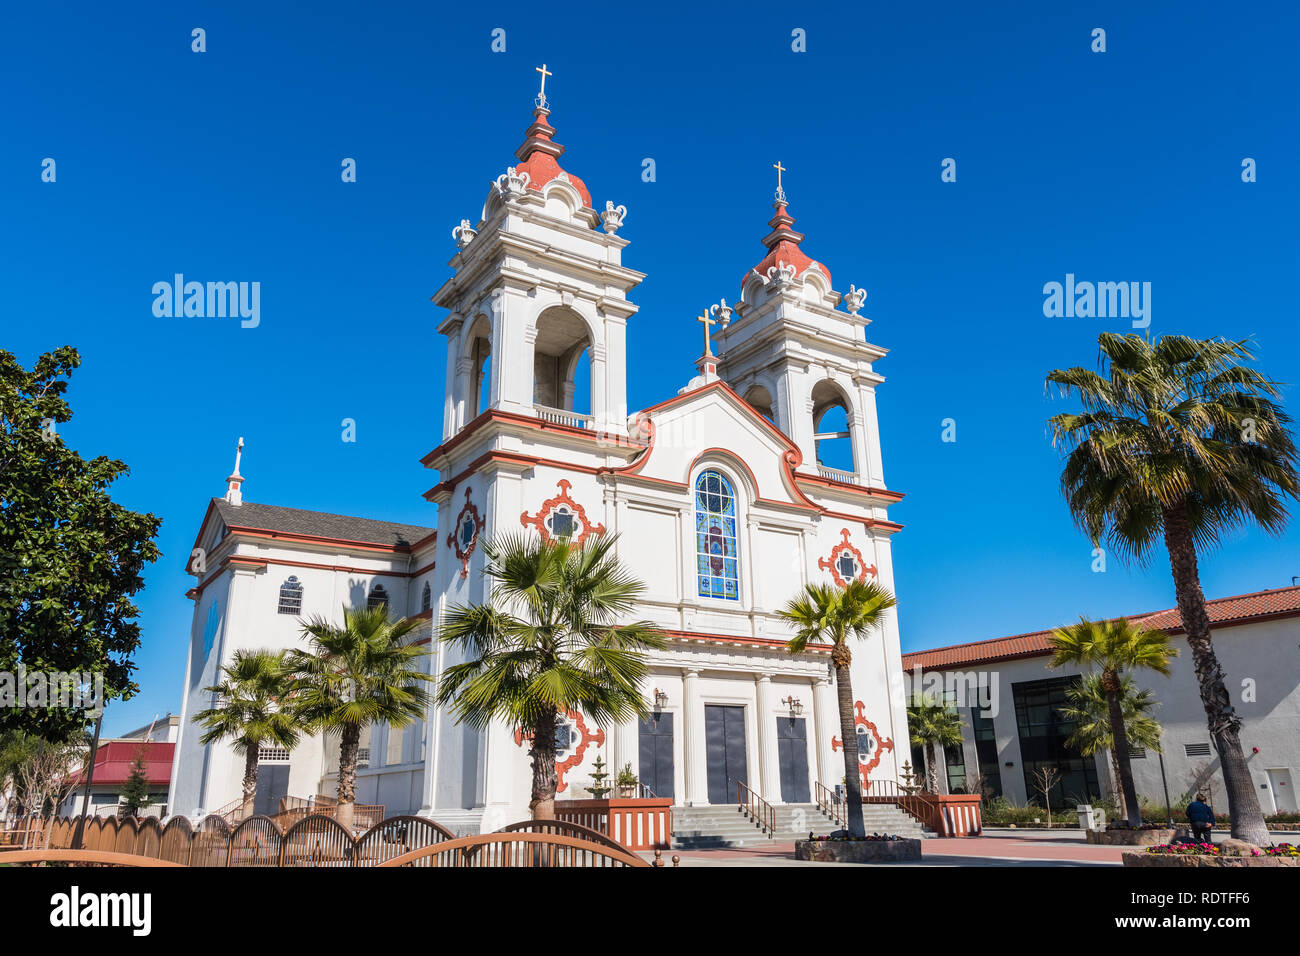 Cinque ferite portoghese chiesa nazionale, il portoghese nella parrocchiale di San Jose di San Francisco Bay Area, California; blu sullo sfondo del cielo Foto Stock